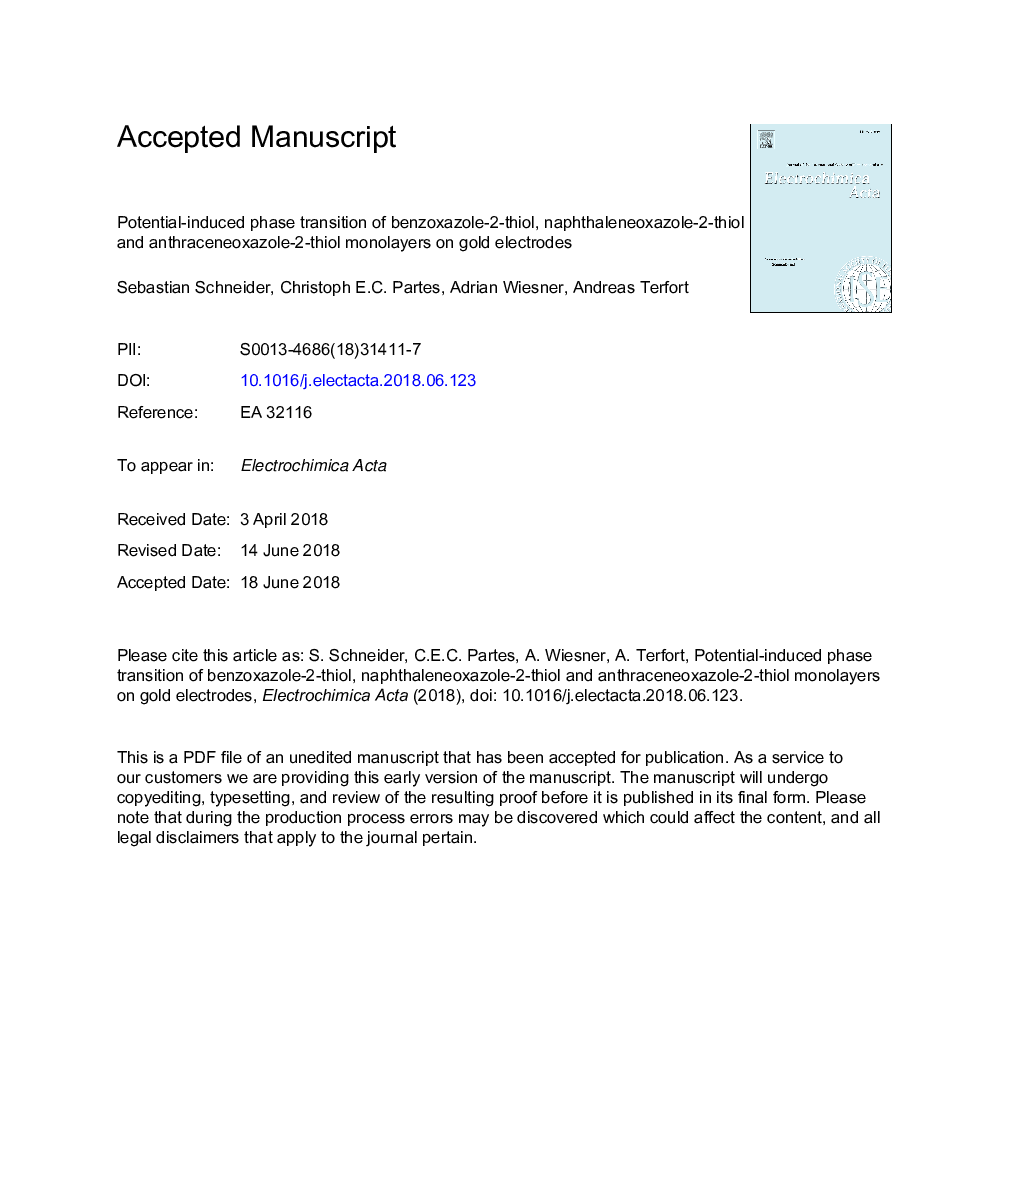 انتقال فاز ناشی از پتانسیل بنزوکسازول 2-تیئول، نفتالینواکسازول-2-تیئول و یکپارچه آنتراکنواکسازول-2-تیئول بر روی الکترودهای طلا 